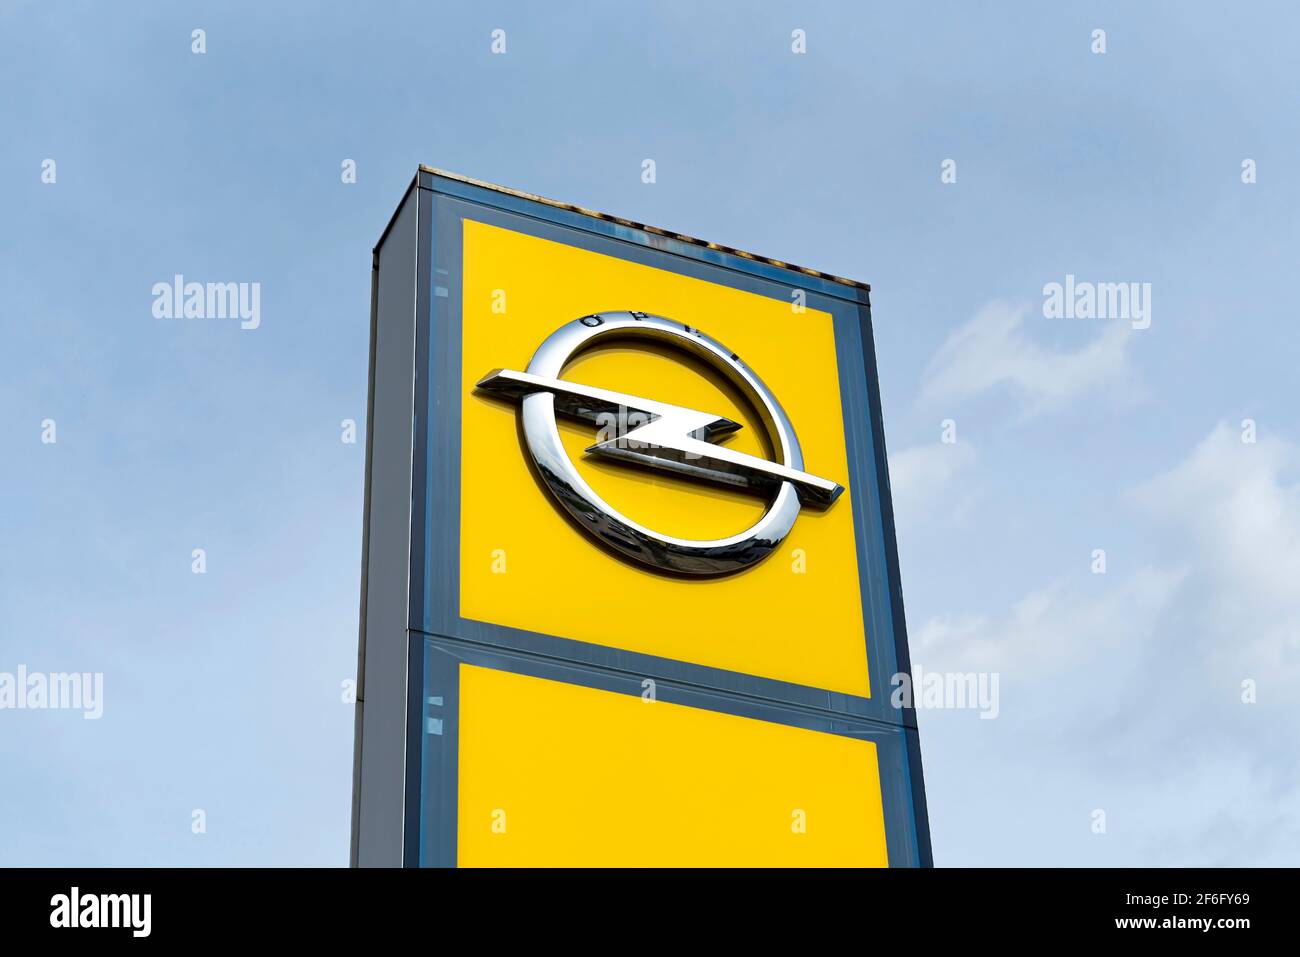 Varsovia, Polonia, septiembre de 2020: Logotipo de Opel sobre el fondo azul del cielo. Opel es un fabricante mundial de automóviles, distribuidor de automóviles Foto de stock